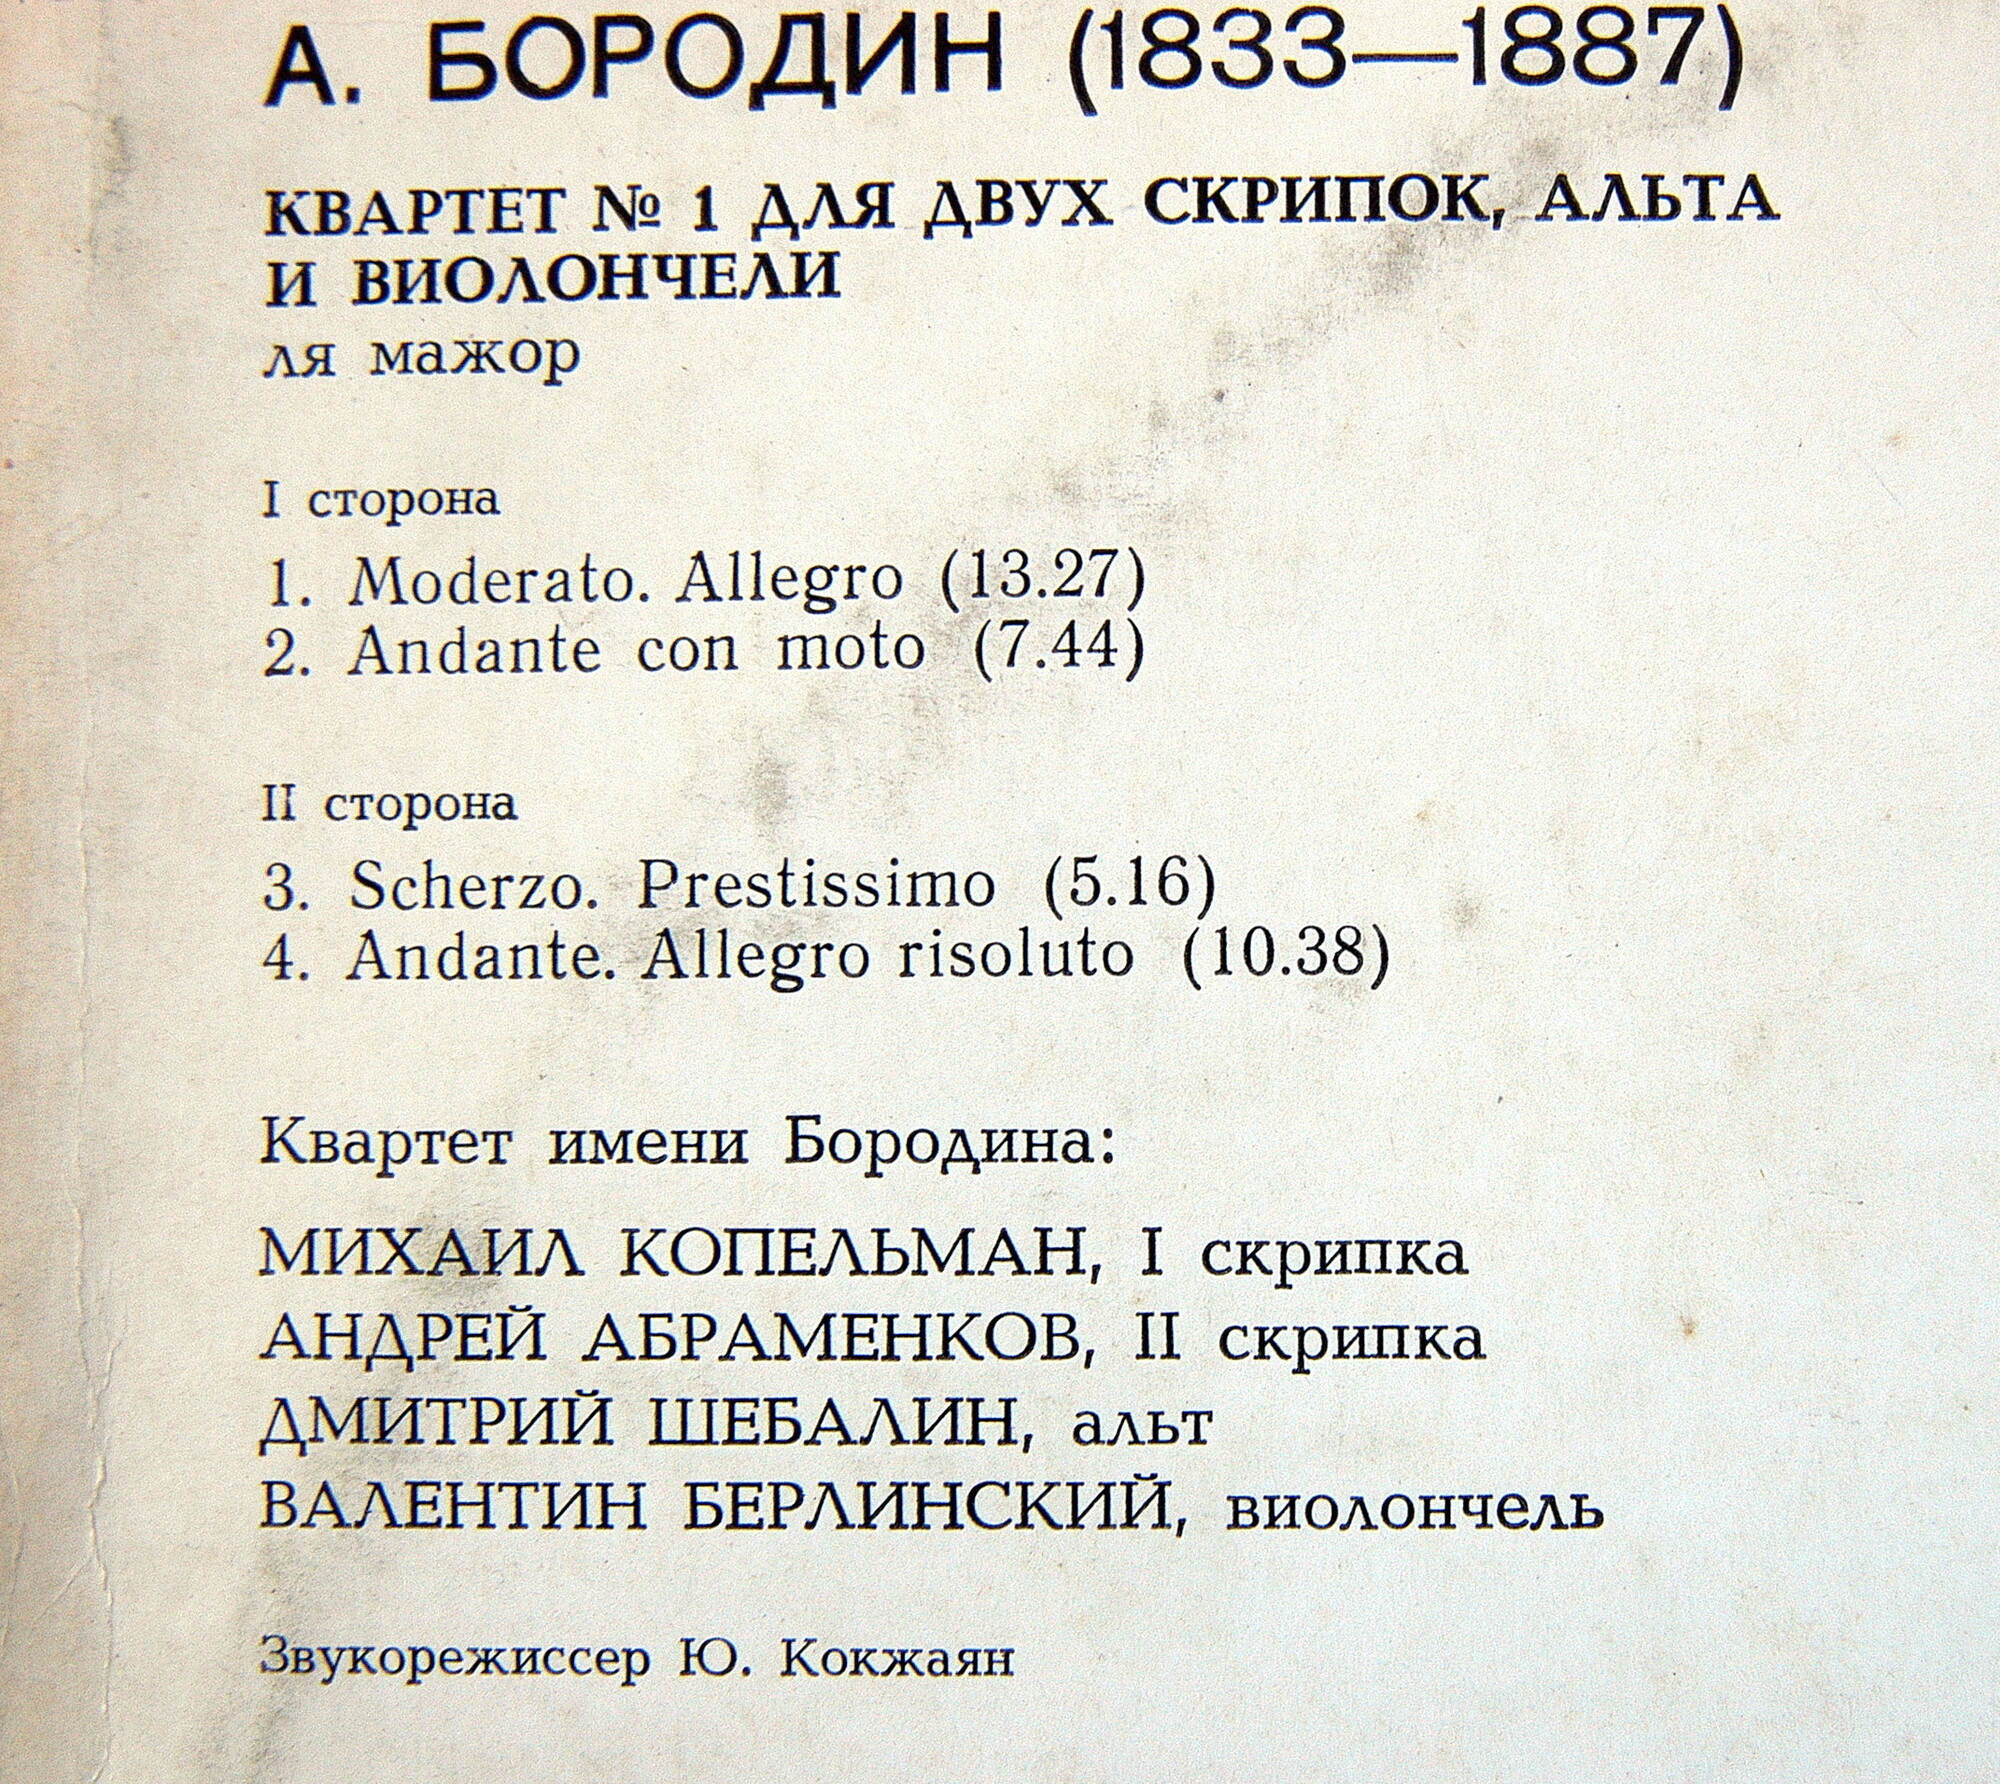 A. БОРОДИН (1833 — 1887): Квартет № 1 для двух скрипок, альта и виолончели ля мажор. Квартет им. А.Бородина